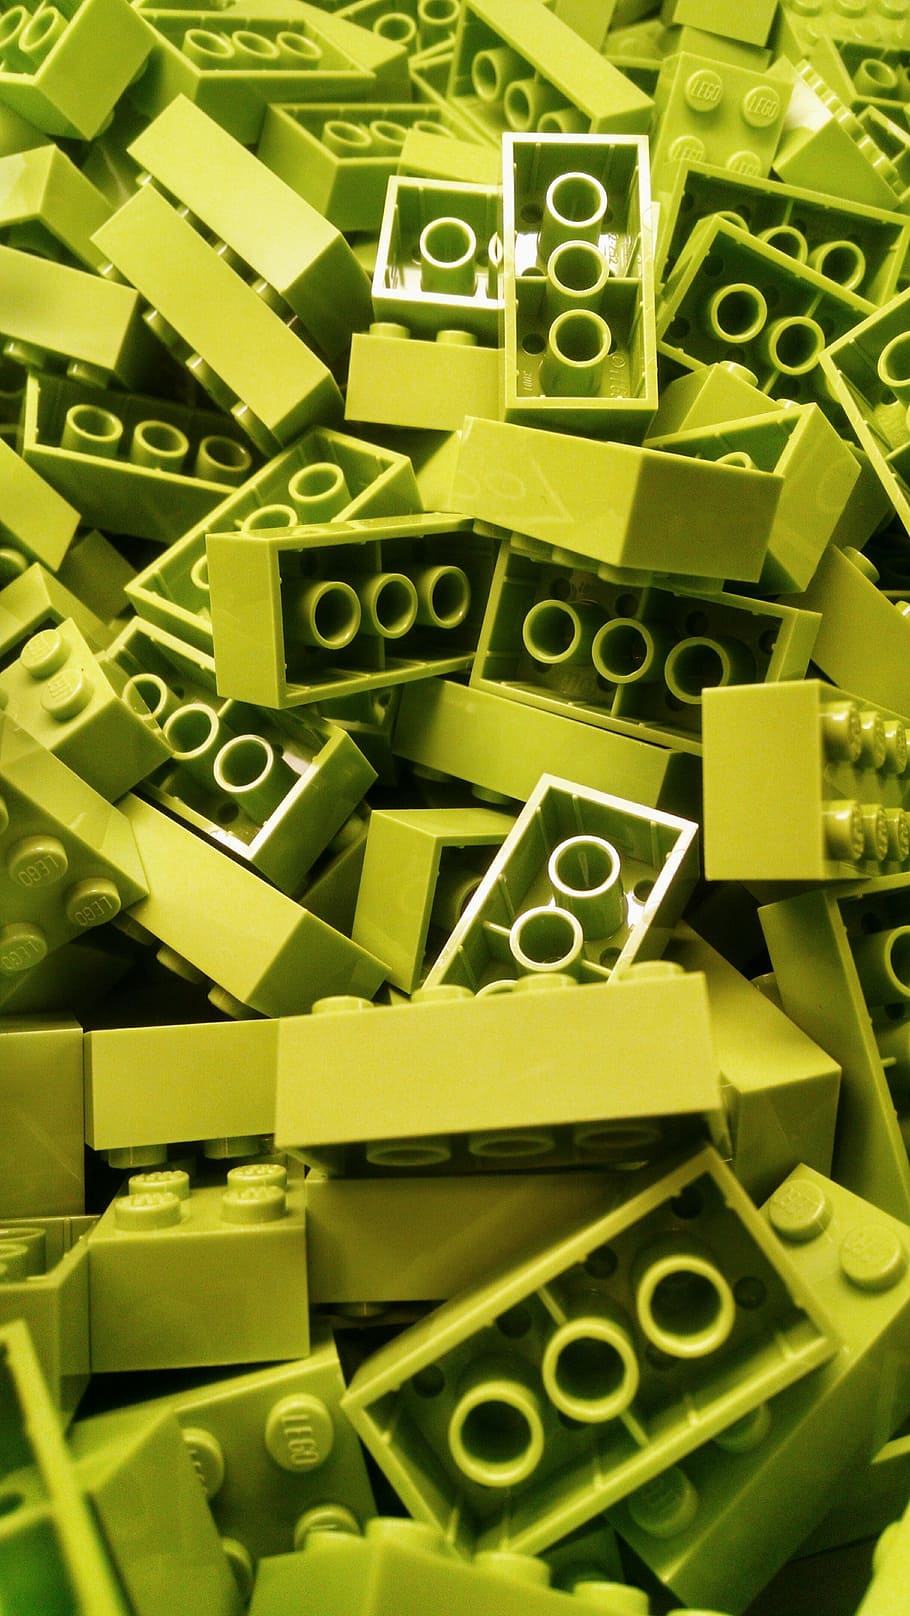 녹색, 빌딩 블록 많은, 레고, 빌딩 블록, 블록, 화려한, 색깔, 벽돌, 장난, 장난감